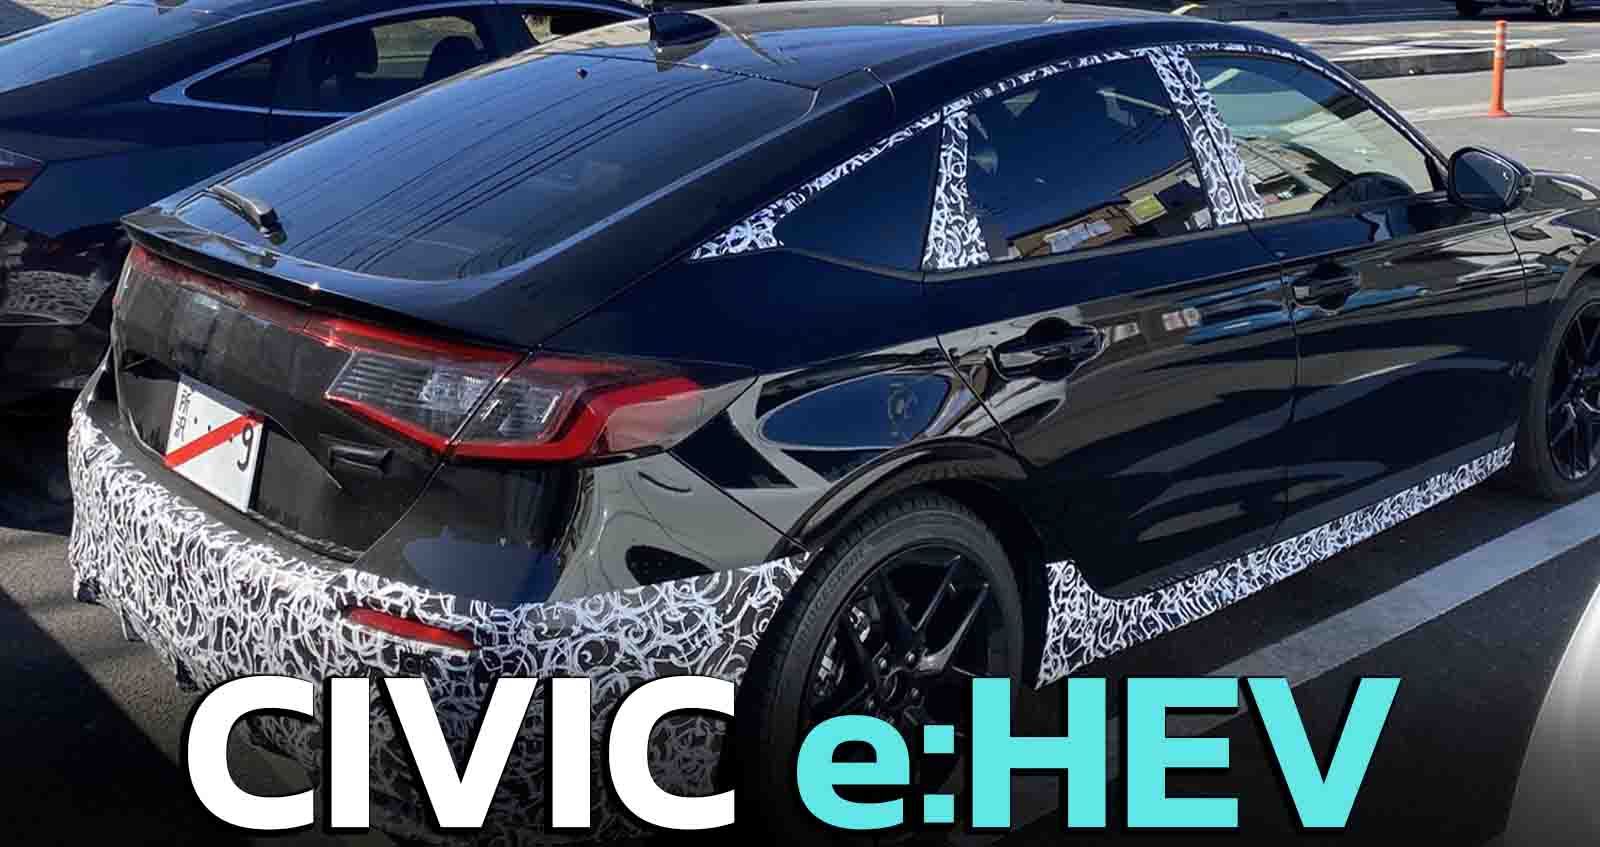 ทดสอบวิ่ง HONDA CIVIC e:HEV ไฮบริดใหม่ บนตัวถัง Hatchback ก่อนขายญี่ปุ่น